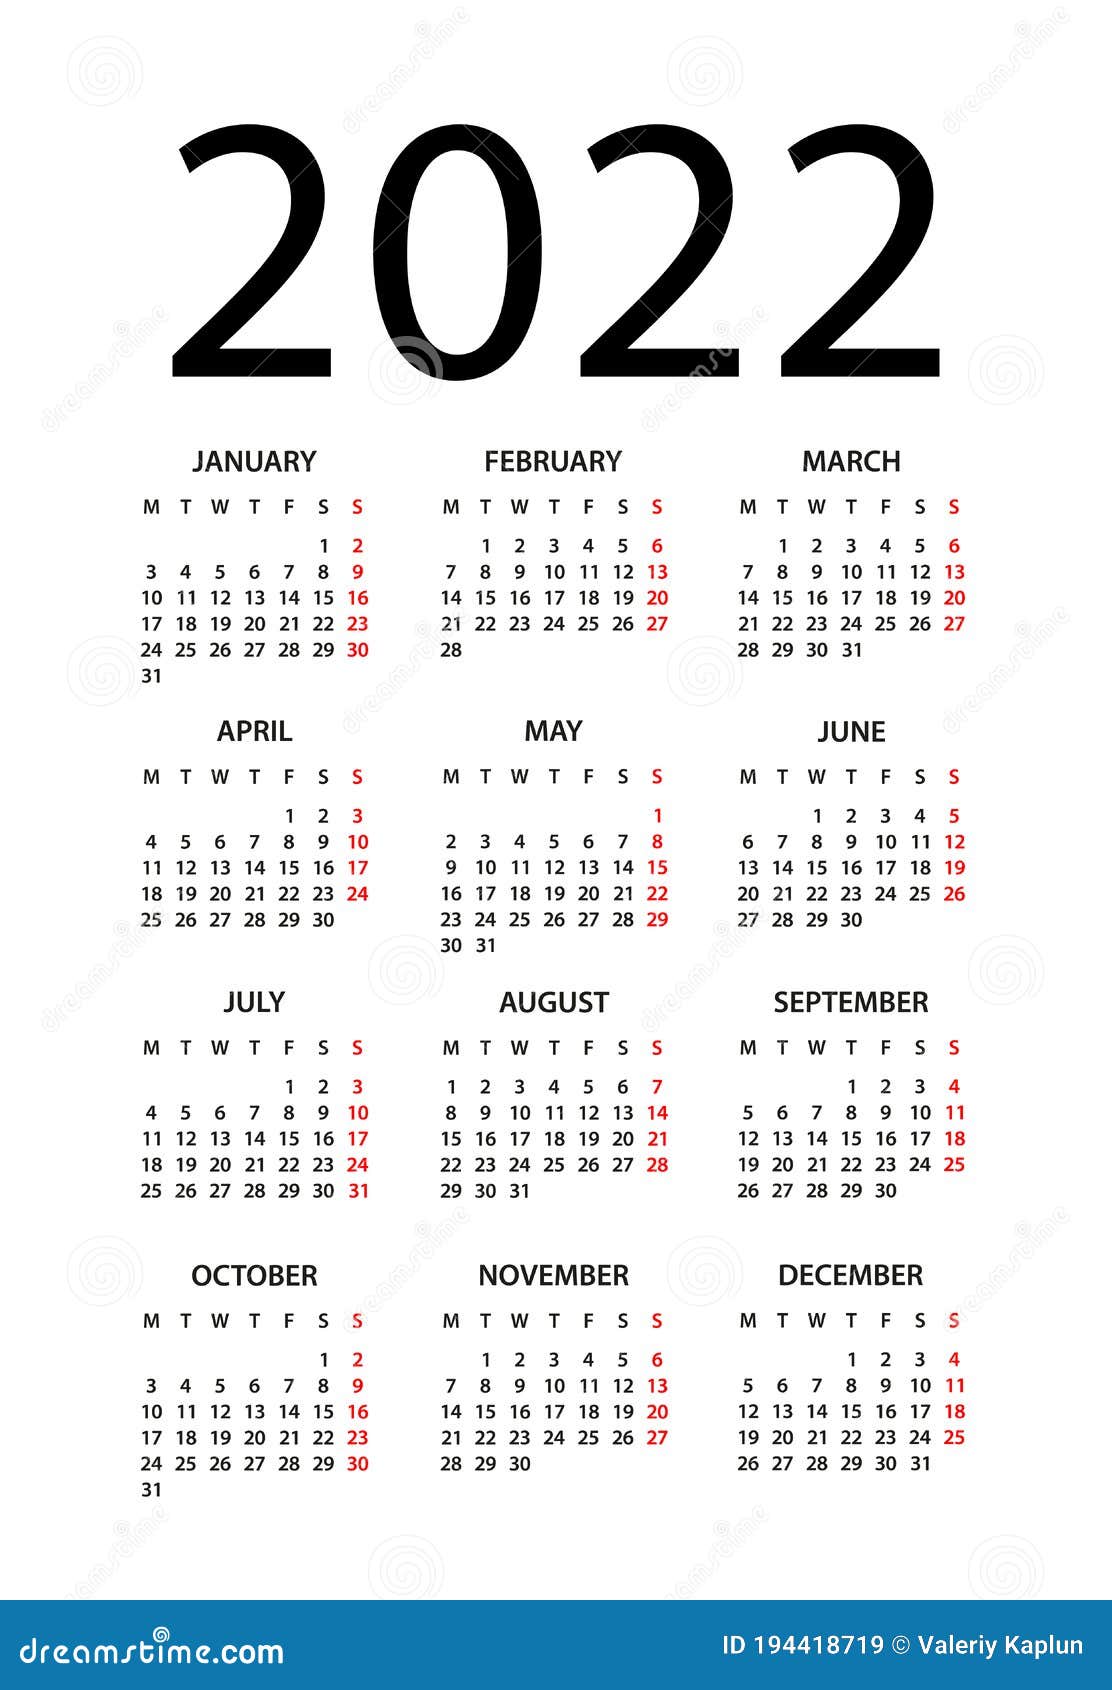 2022-calendar-weeks-weekly-2022-calendar